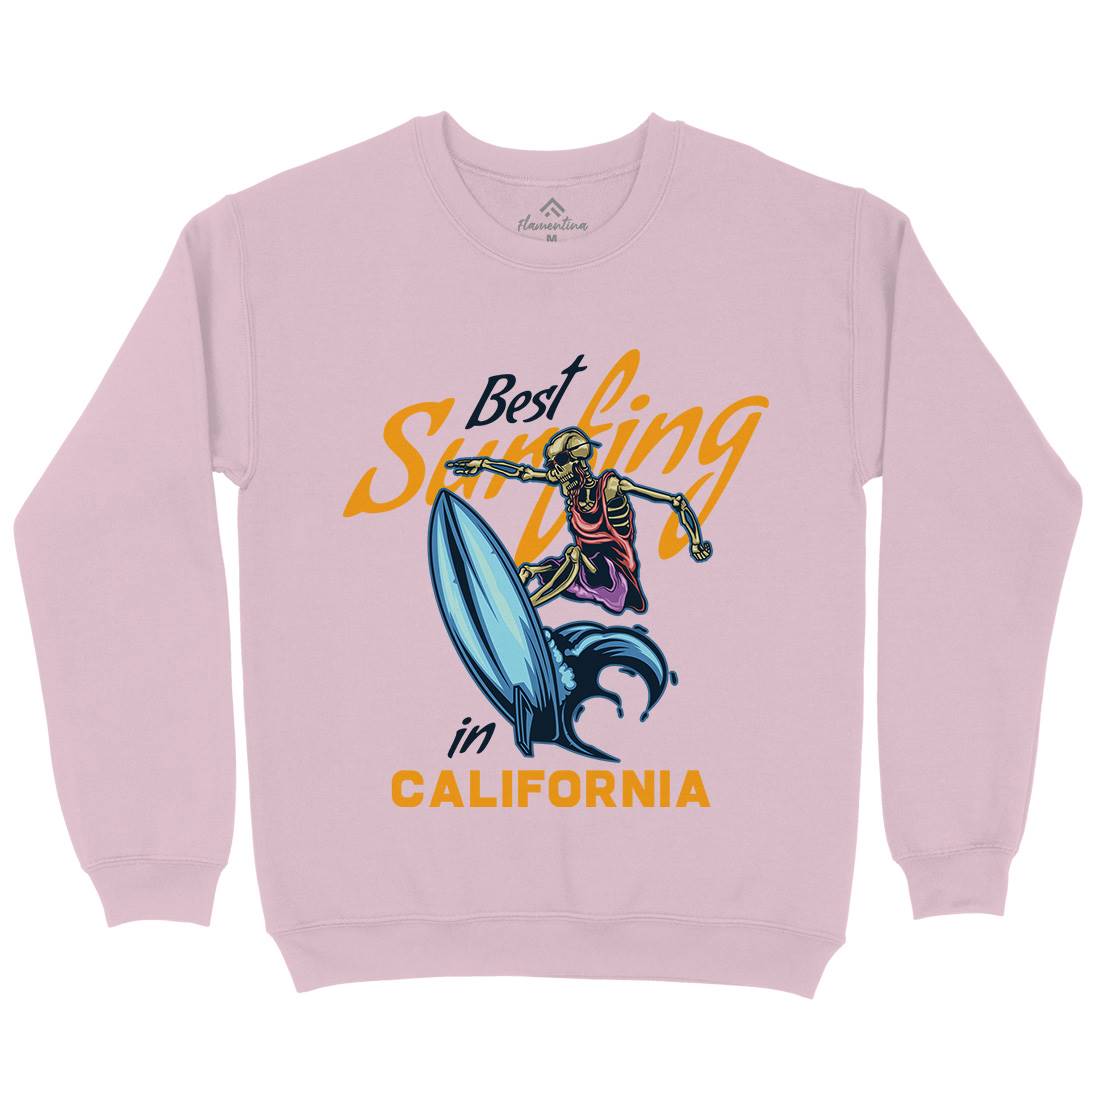 California Surfing Kids Crew Neck Sweatshirt Surf B170